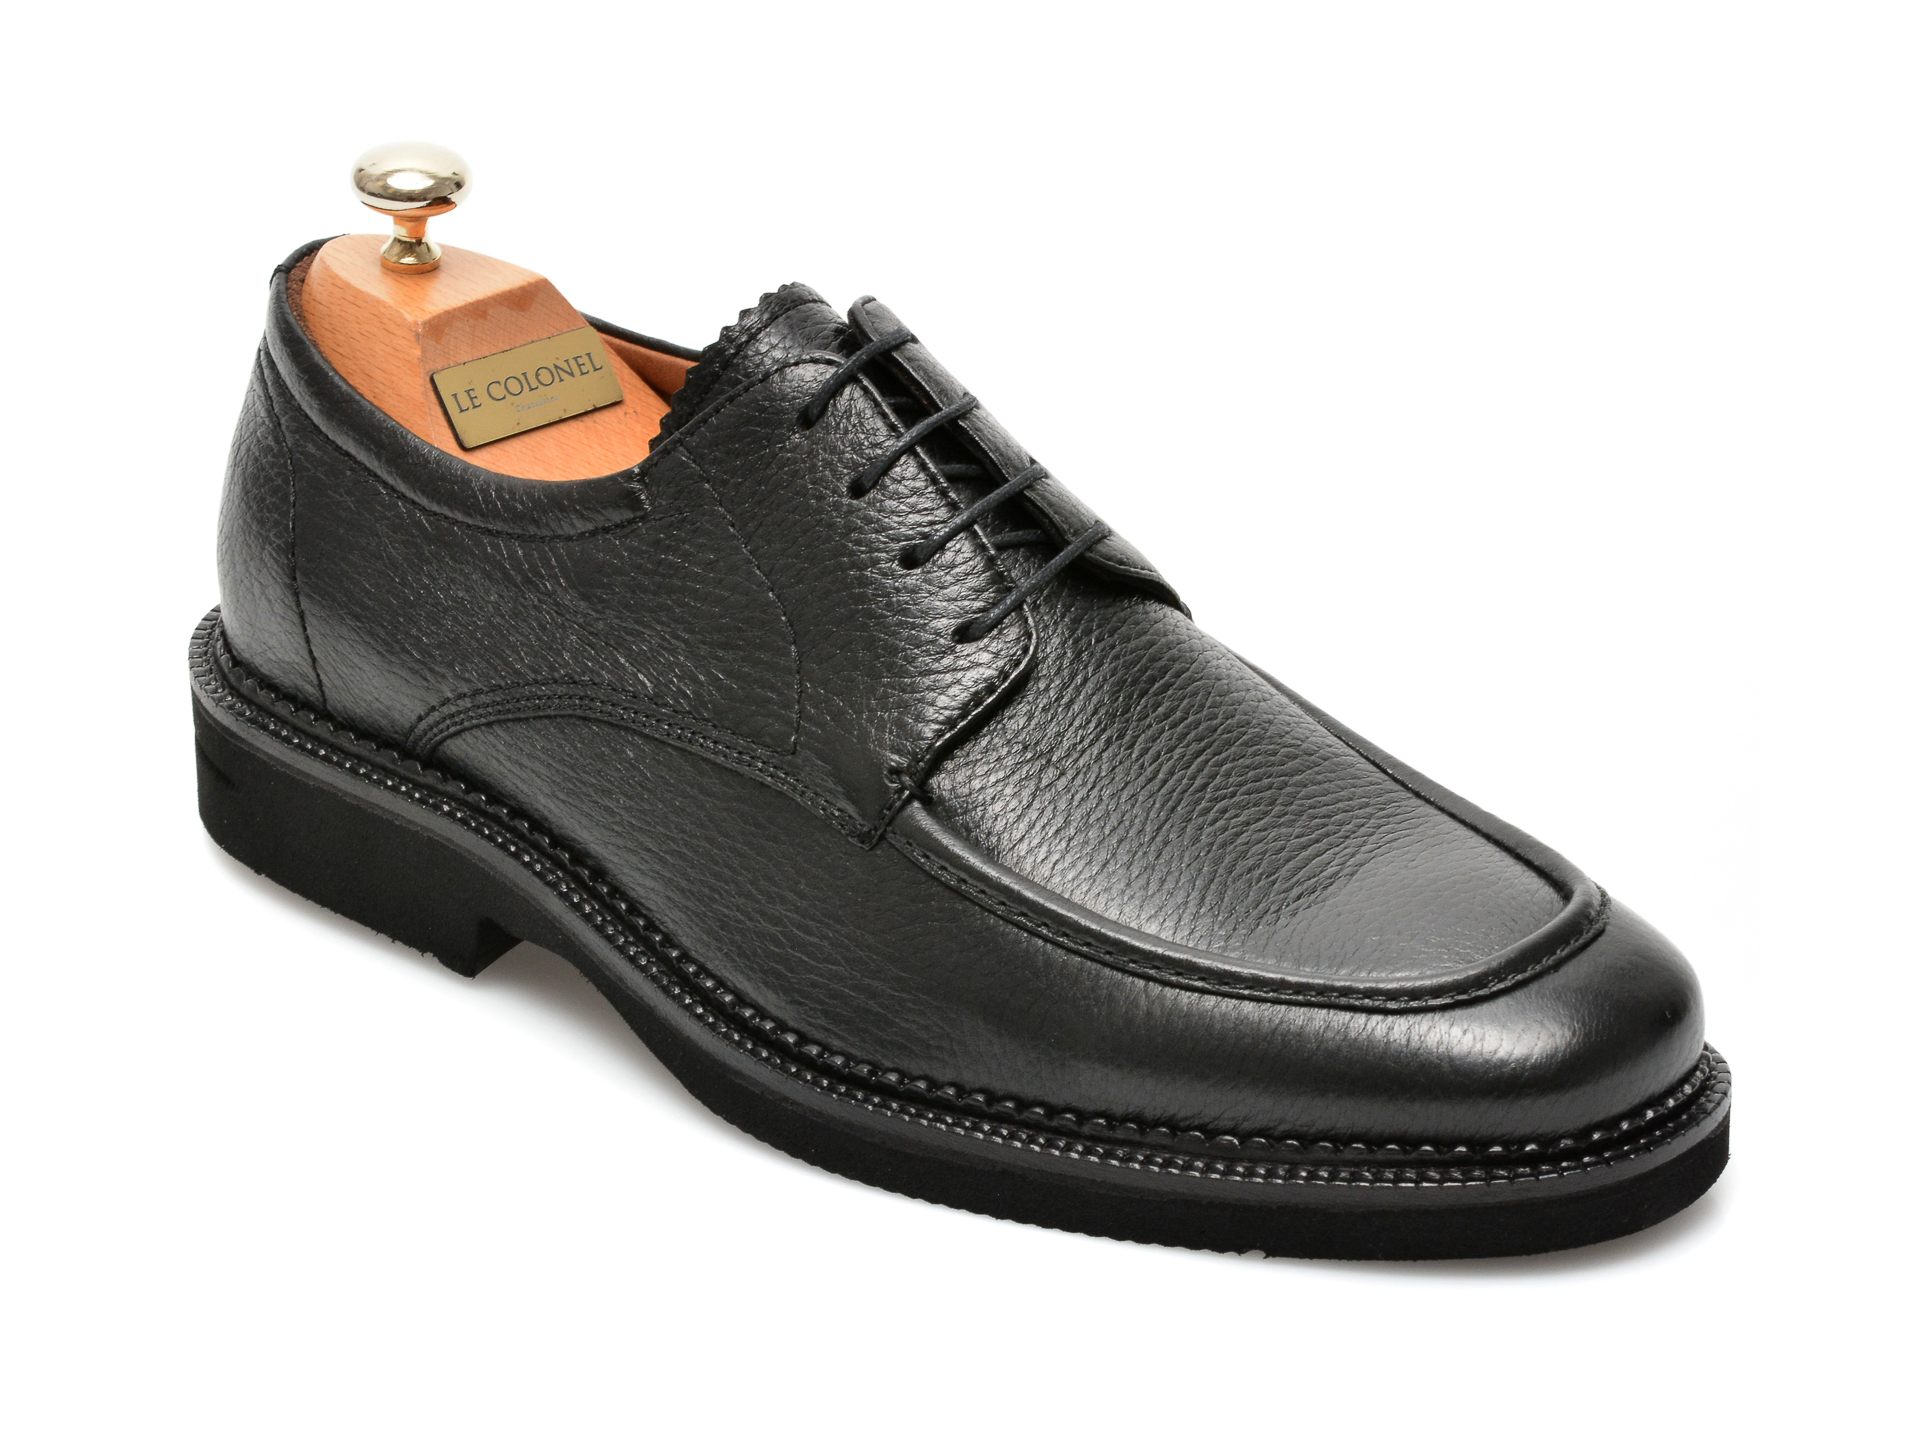 Pantofi LE COLONEL negri, 63501, din piele naturala Le Colonel imagine 2022 reducere